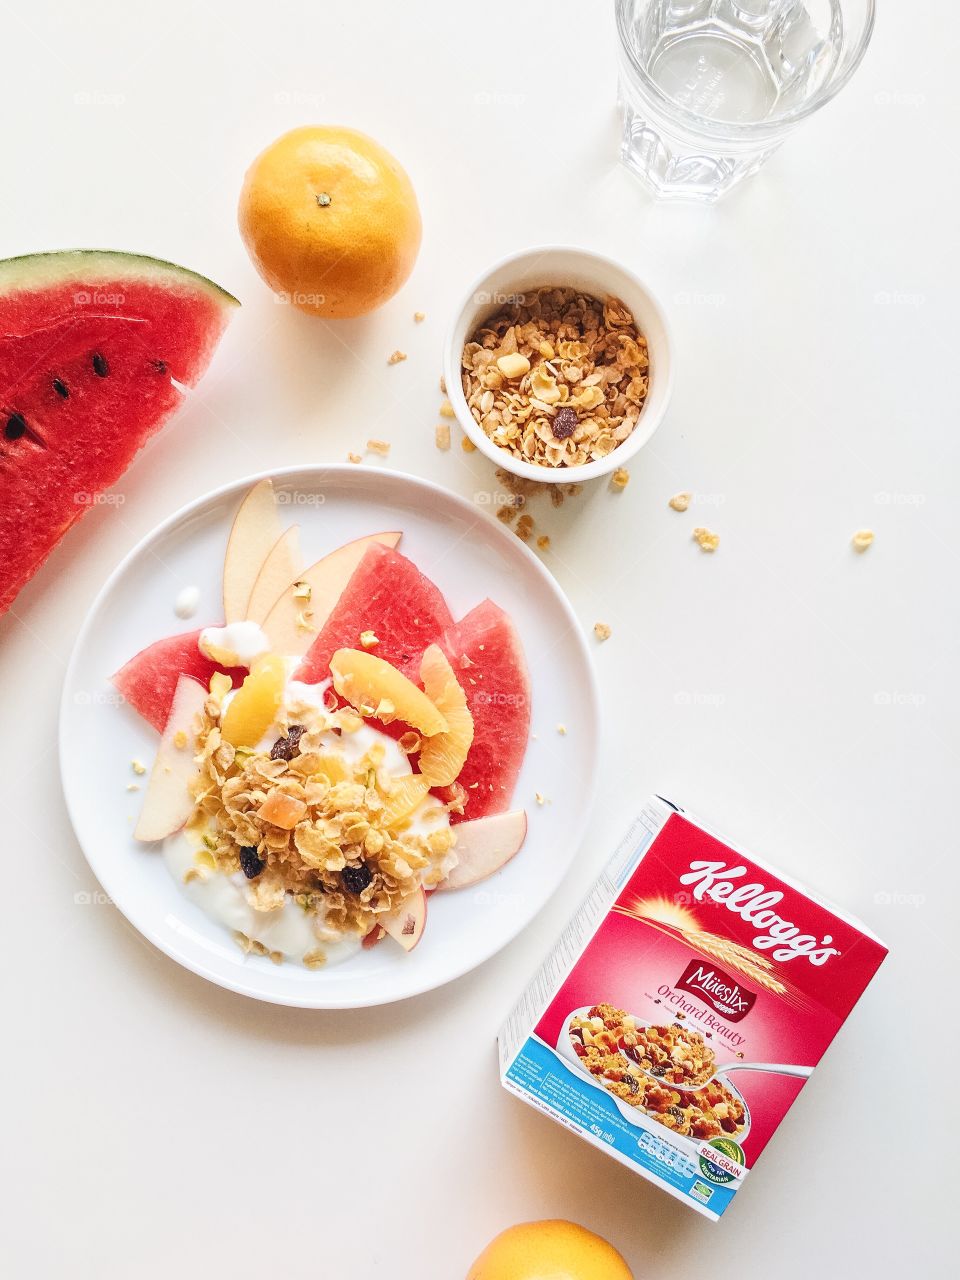 Healthy breakfast with Kellogg's Mueslix, yogurt and fresh mixed fruit.